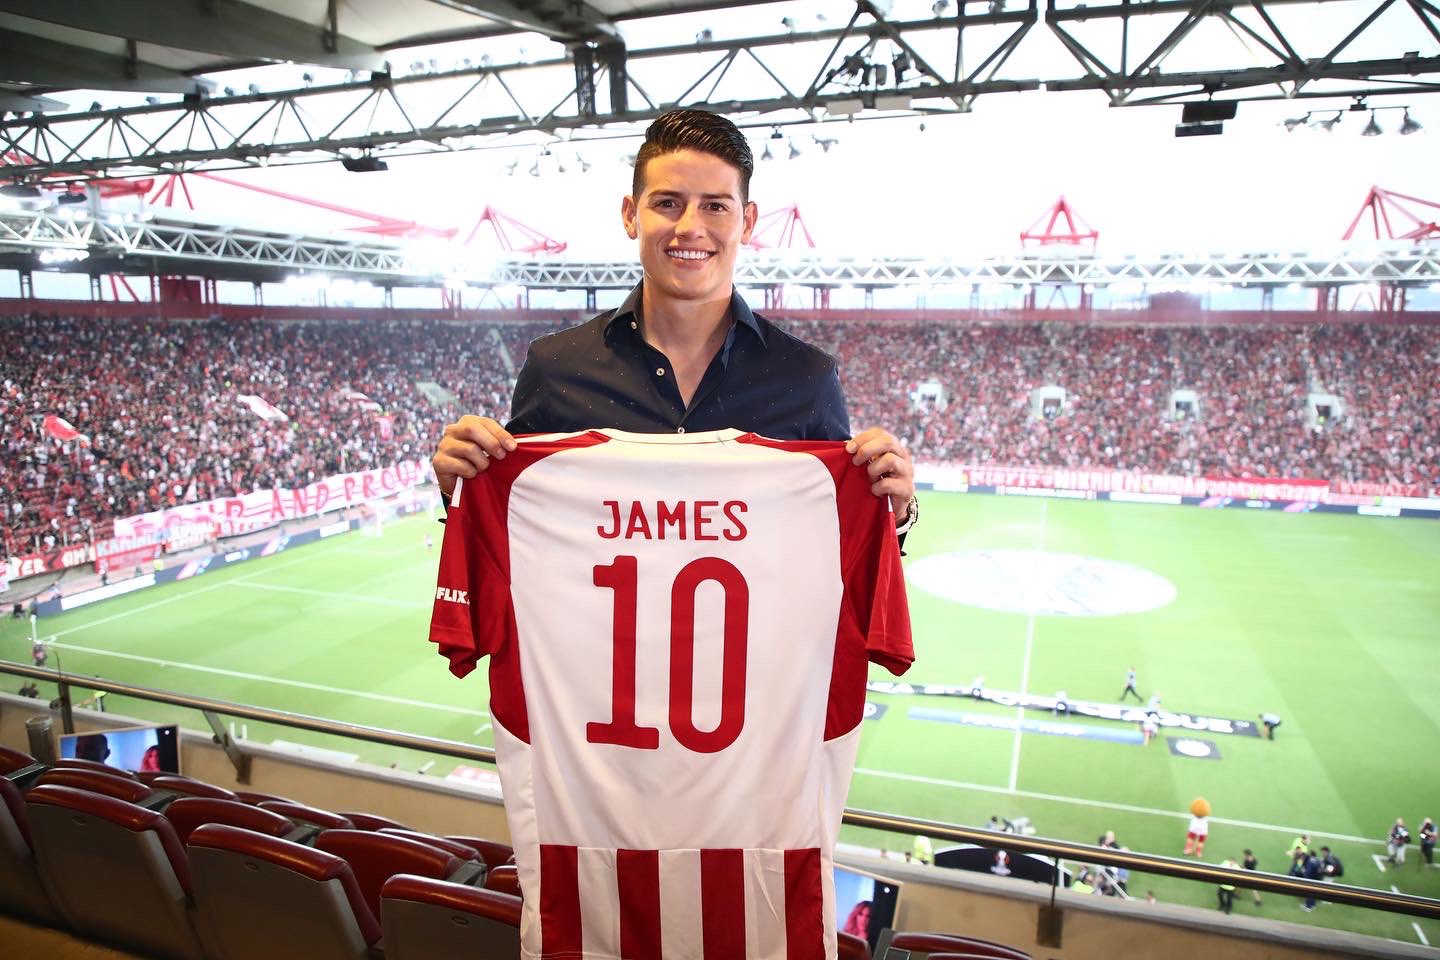 James ya posó con la camiseta del Olympiacos, portará la ‘10’